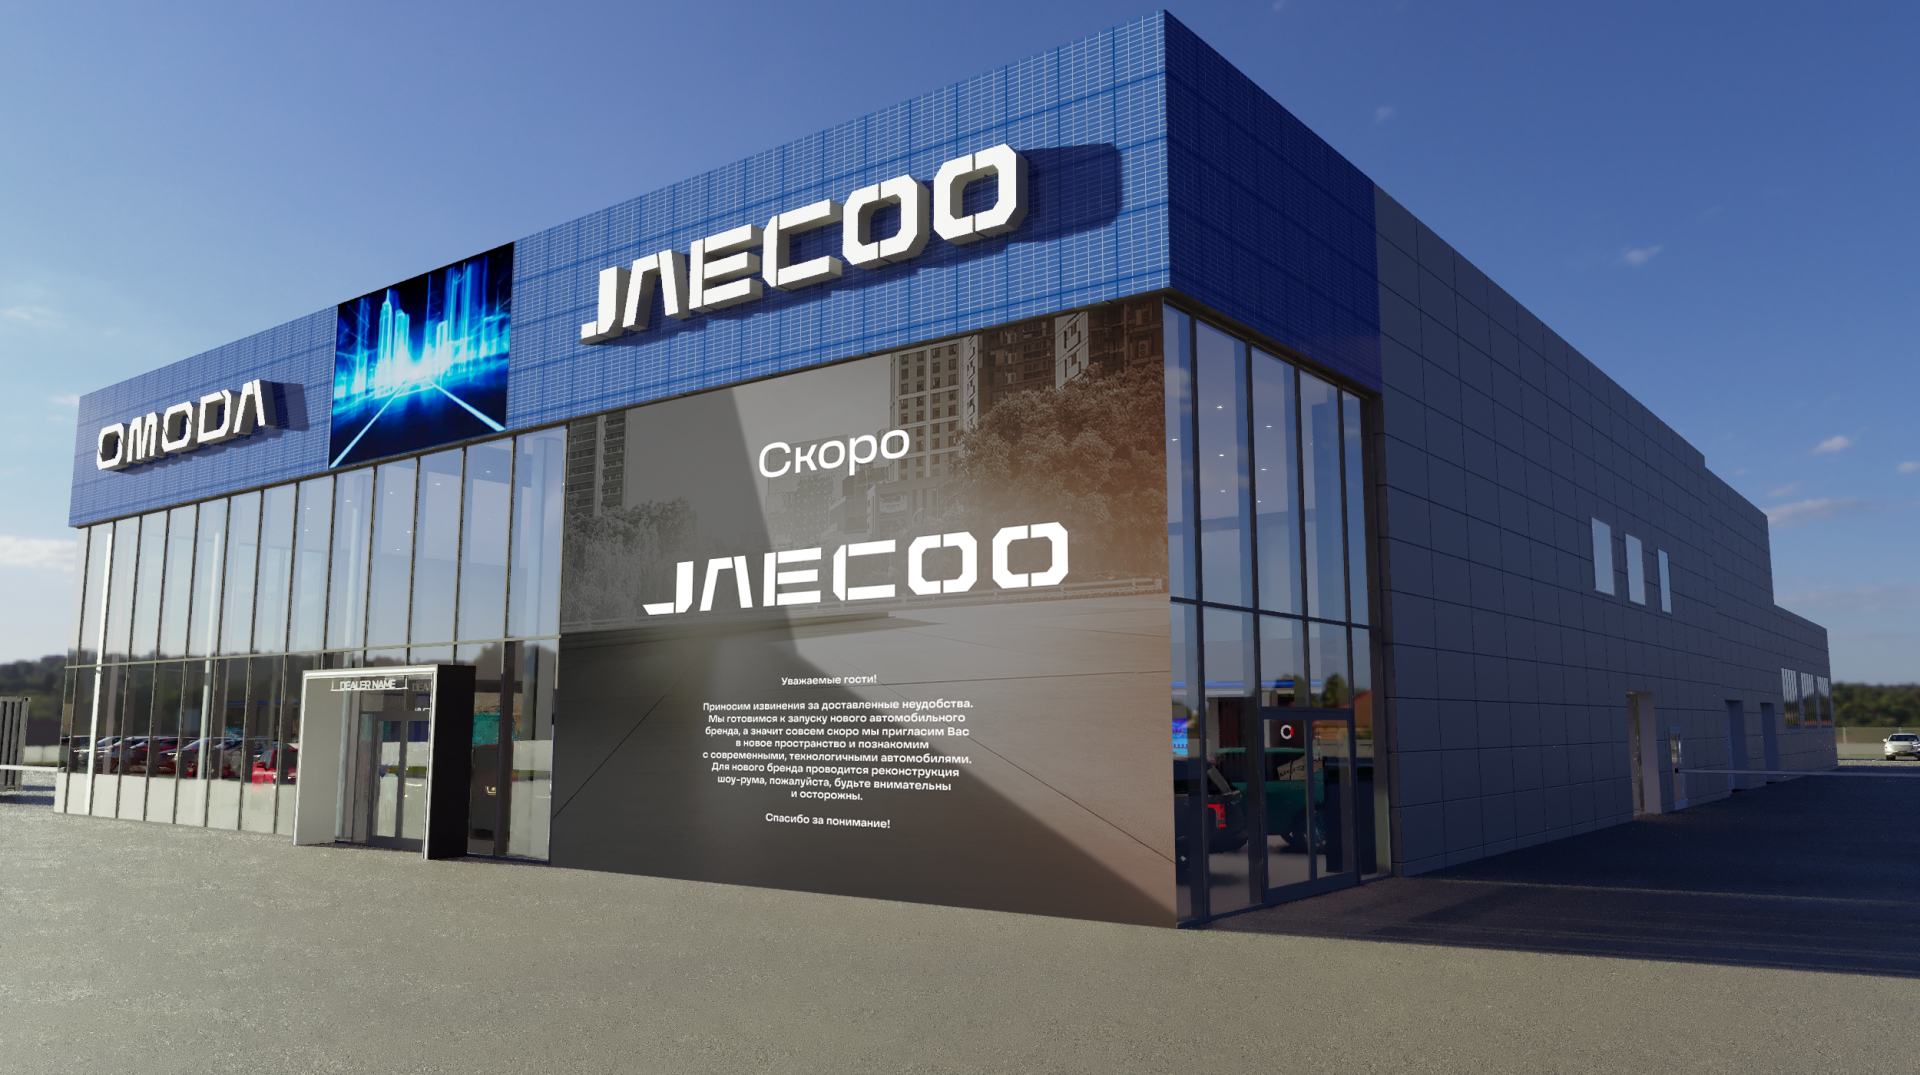 Jaecoo дилеры в москве. Jaecooлоготип. Jaecoo дилерские центры. Jaecoo j7 Сыктывкар. Jaecoo лого.